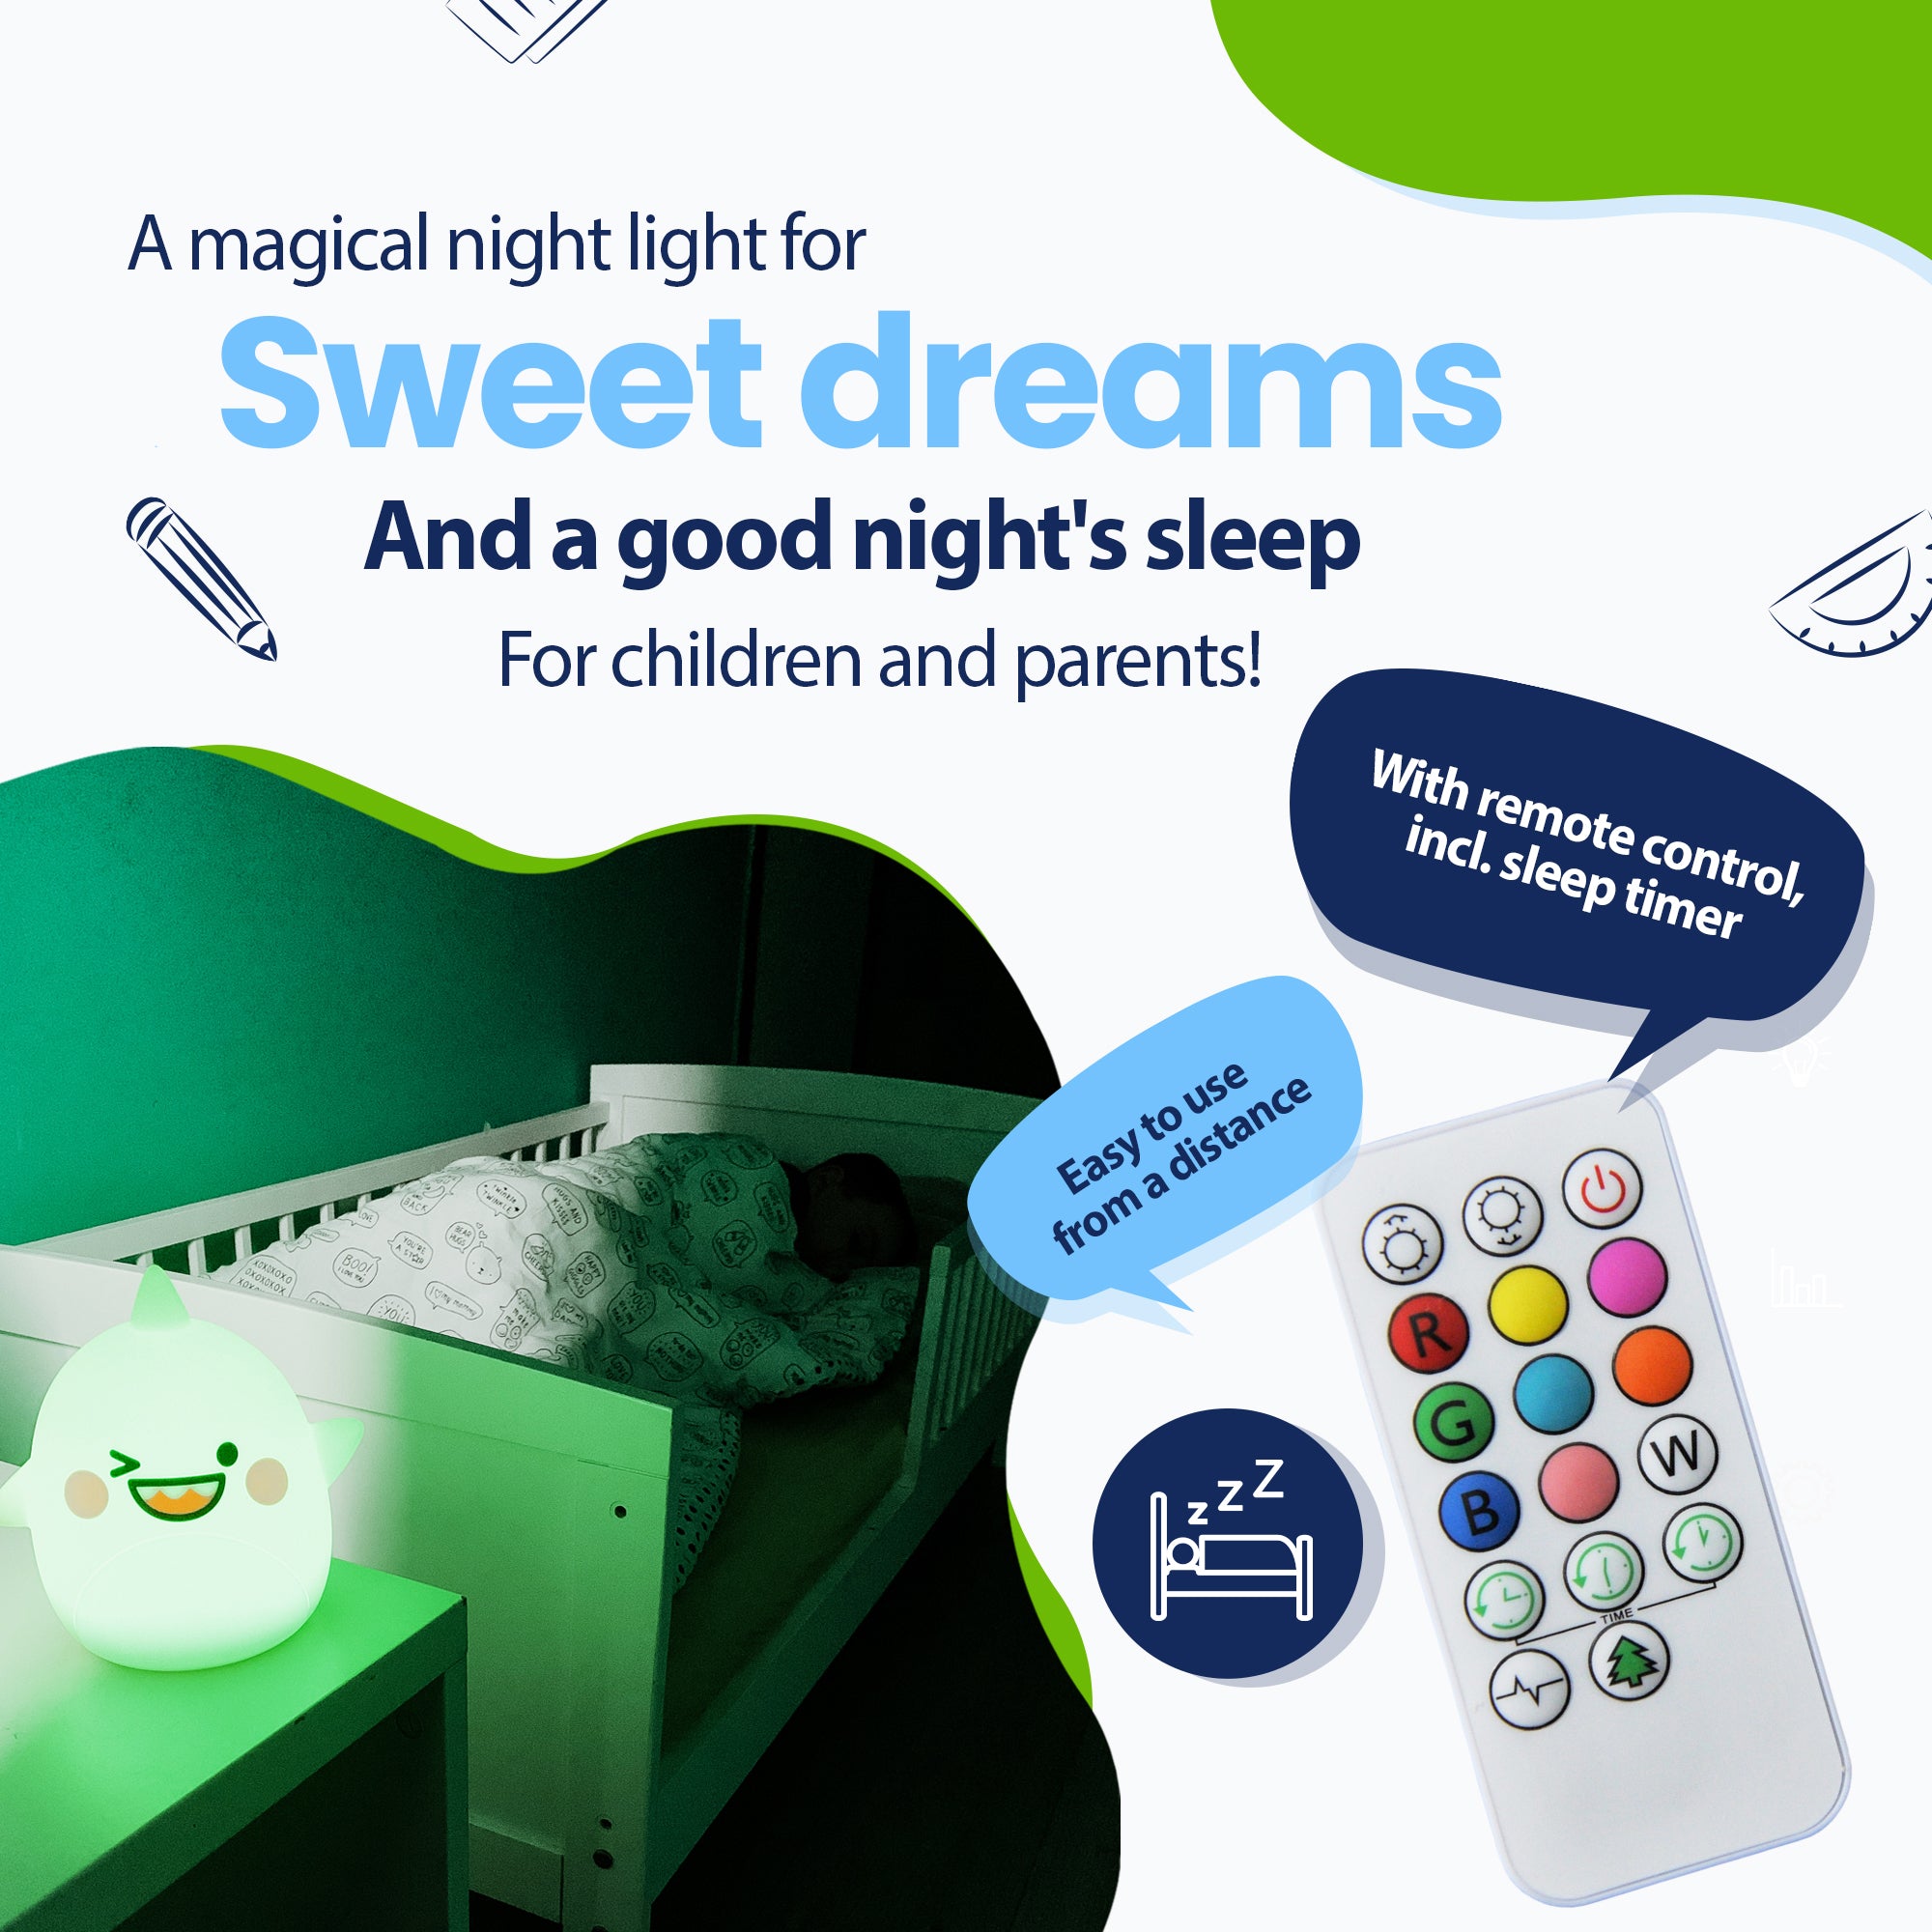 Magiczna lampka nocna zapewniająca przyjemne sny i zdrowy sen dla dzieci i rodziców - z pilotem i wyłącznikiem czasowym - łatwo z daleka